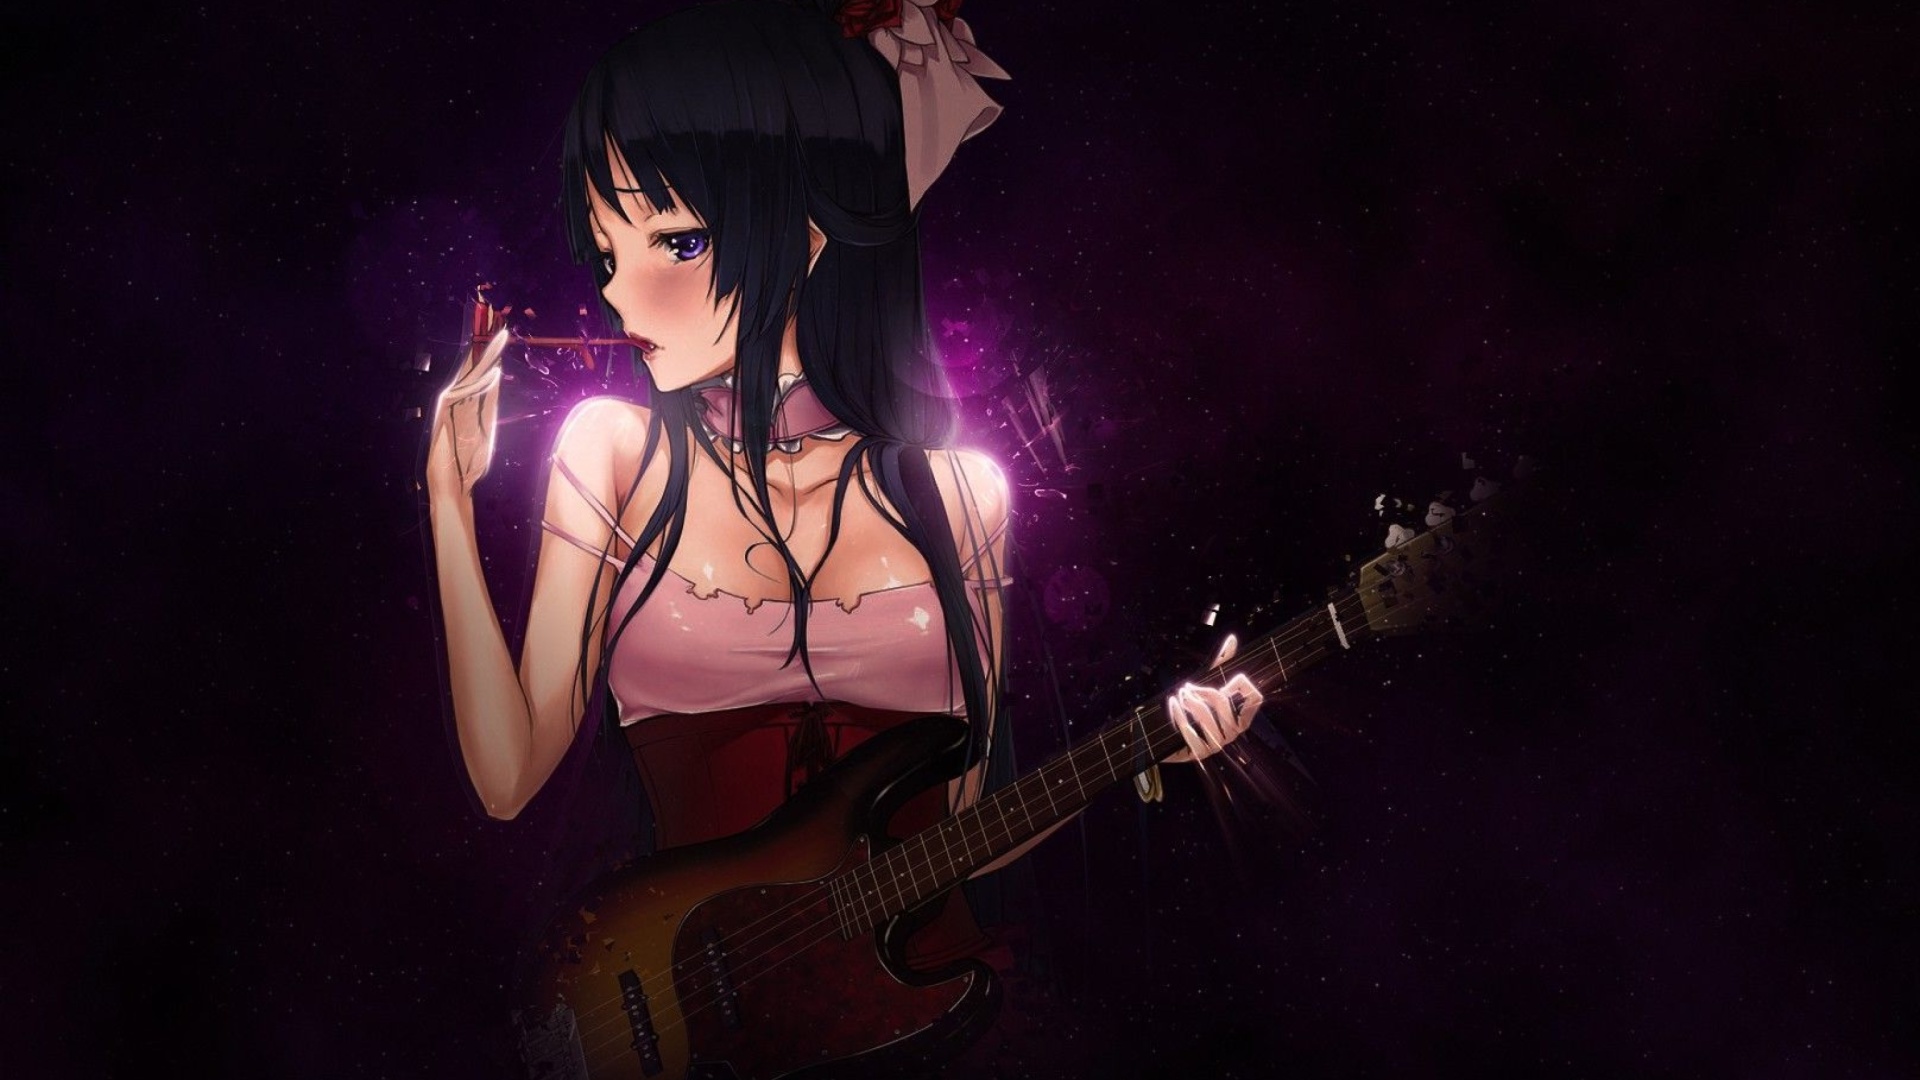 Обои Anime Girl with Guitar 1920x1080